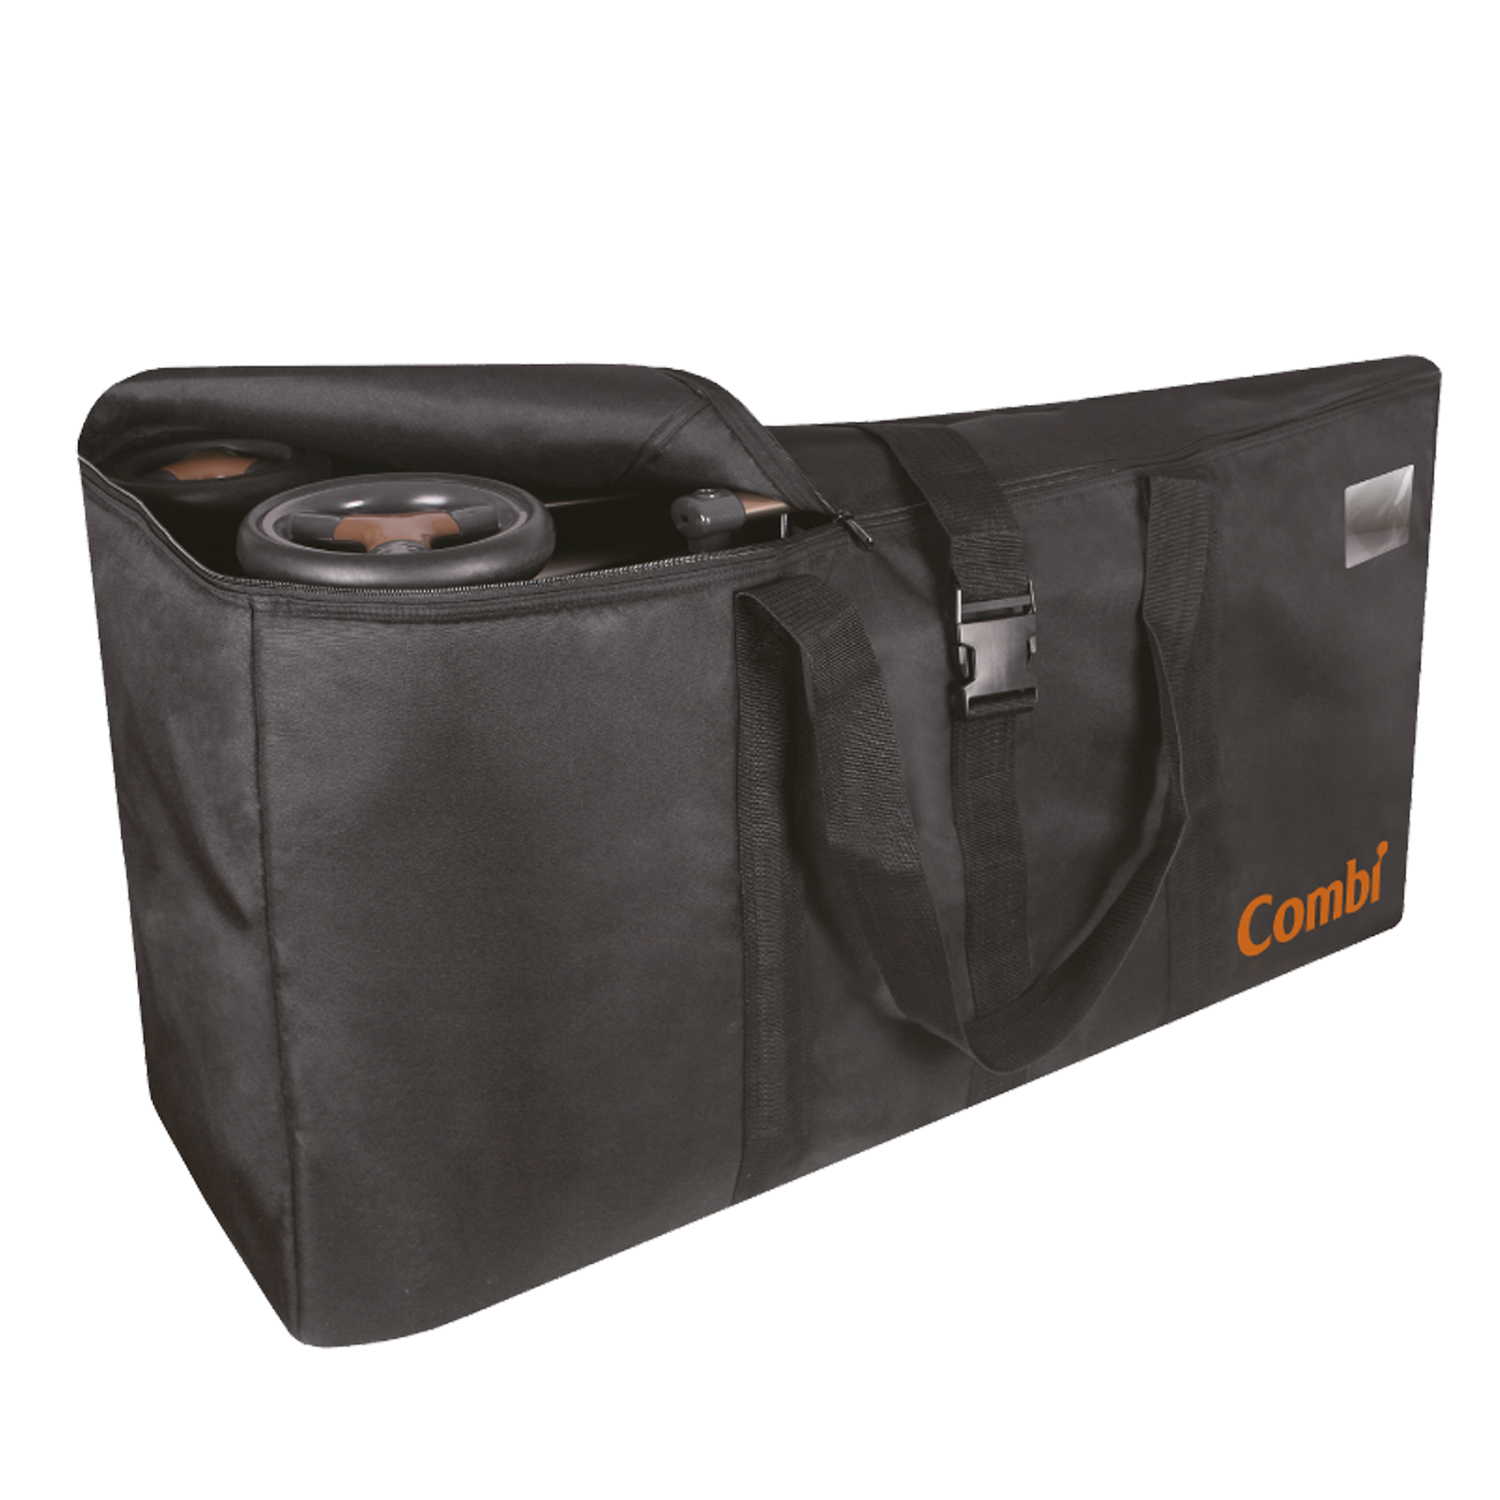 Combi - Универсальная сумка для транспортировки (хранения) коляски (397635)